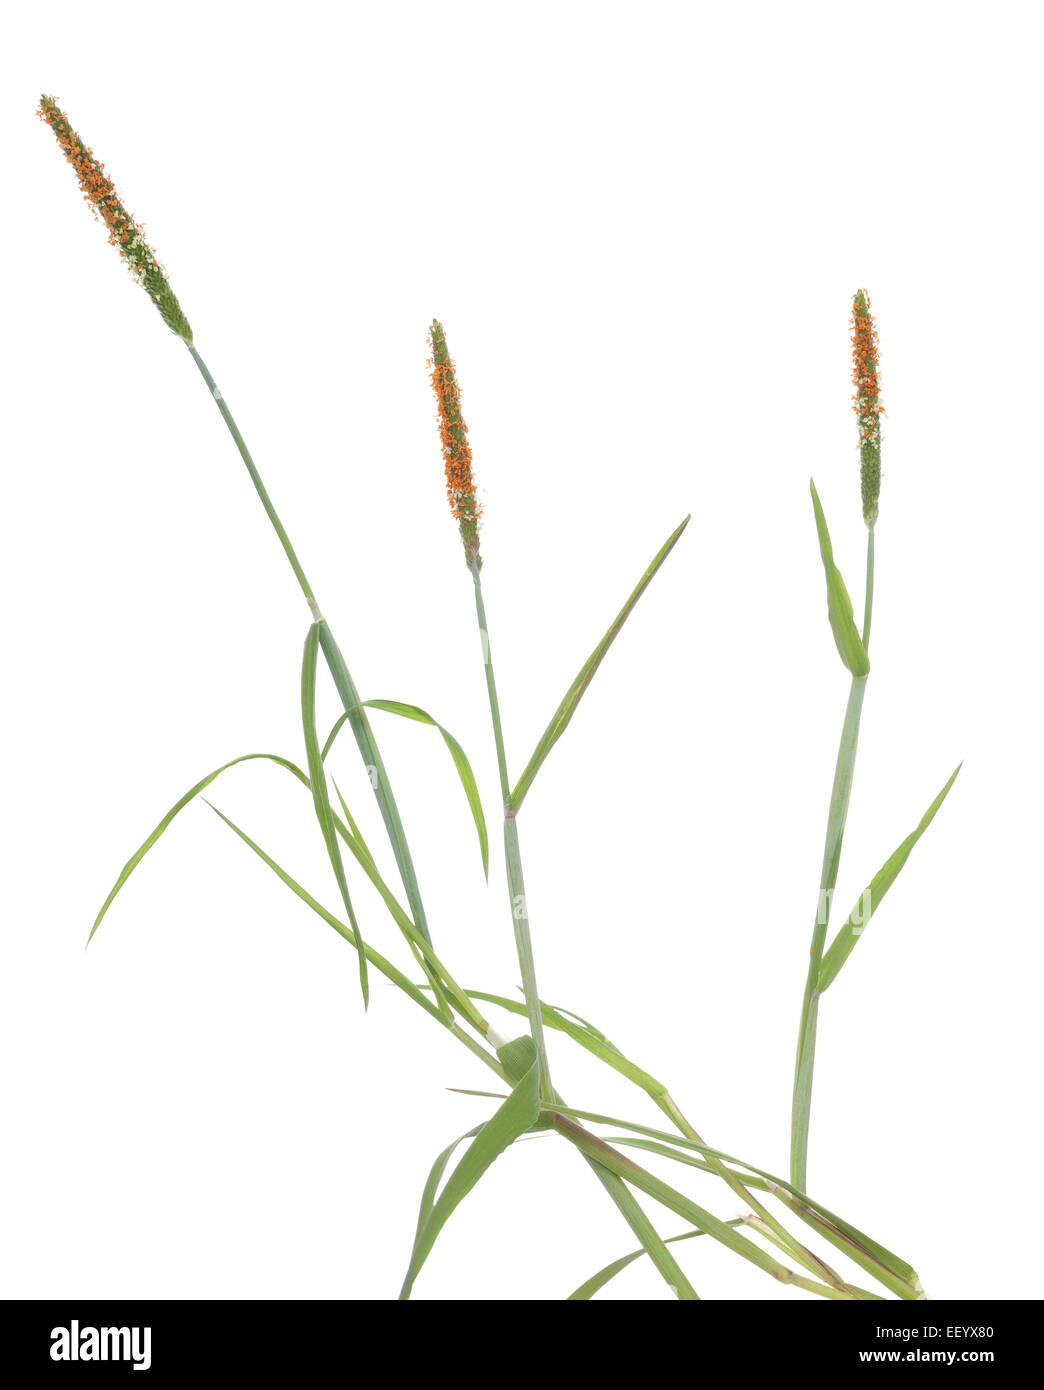 Di ciuffo di erba(Alopecurus aequalis) su sfondo bianco Foto Stock